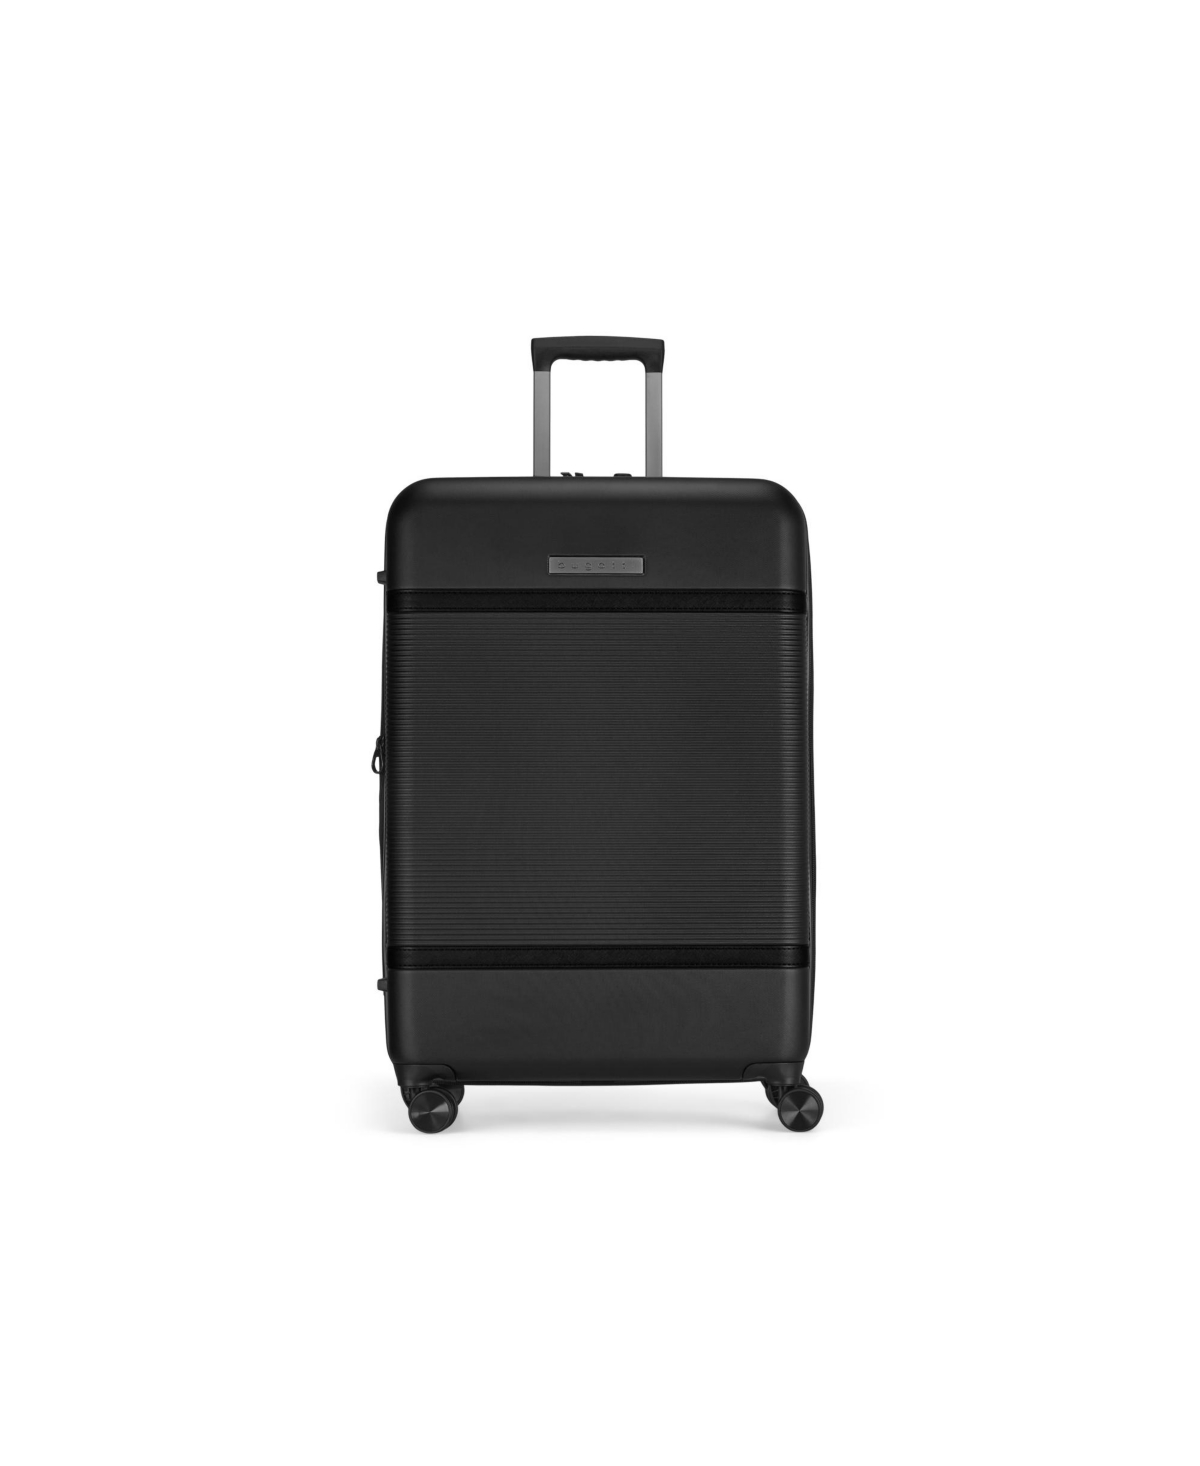 Wellington 24" Upright Luggage - Black